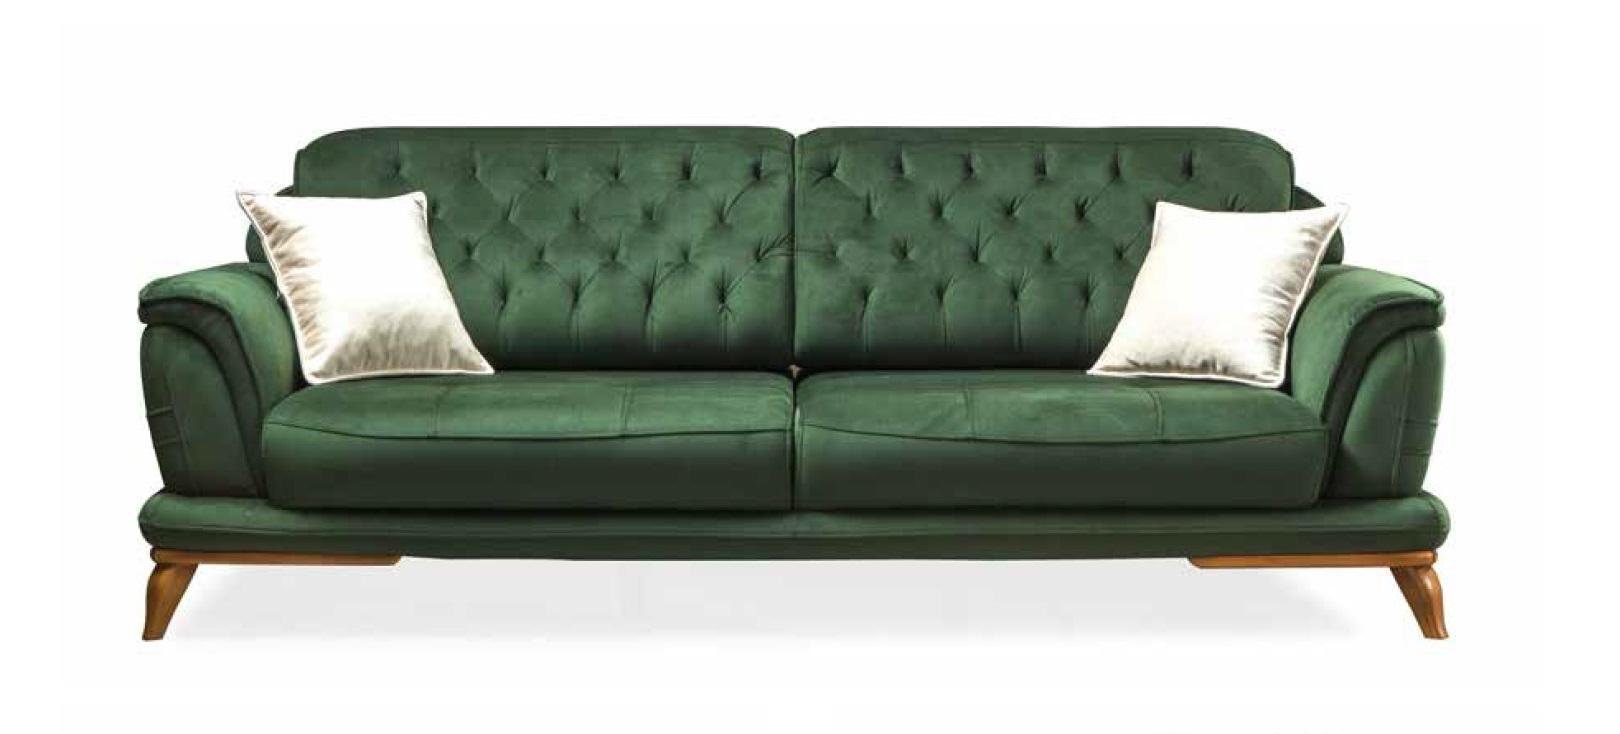 Moderner 3-Sitzer Europe Chesterfield Möbel Made Couch Dreisitzer Sofa JVmoebel in Neu, Luxus